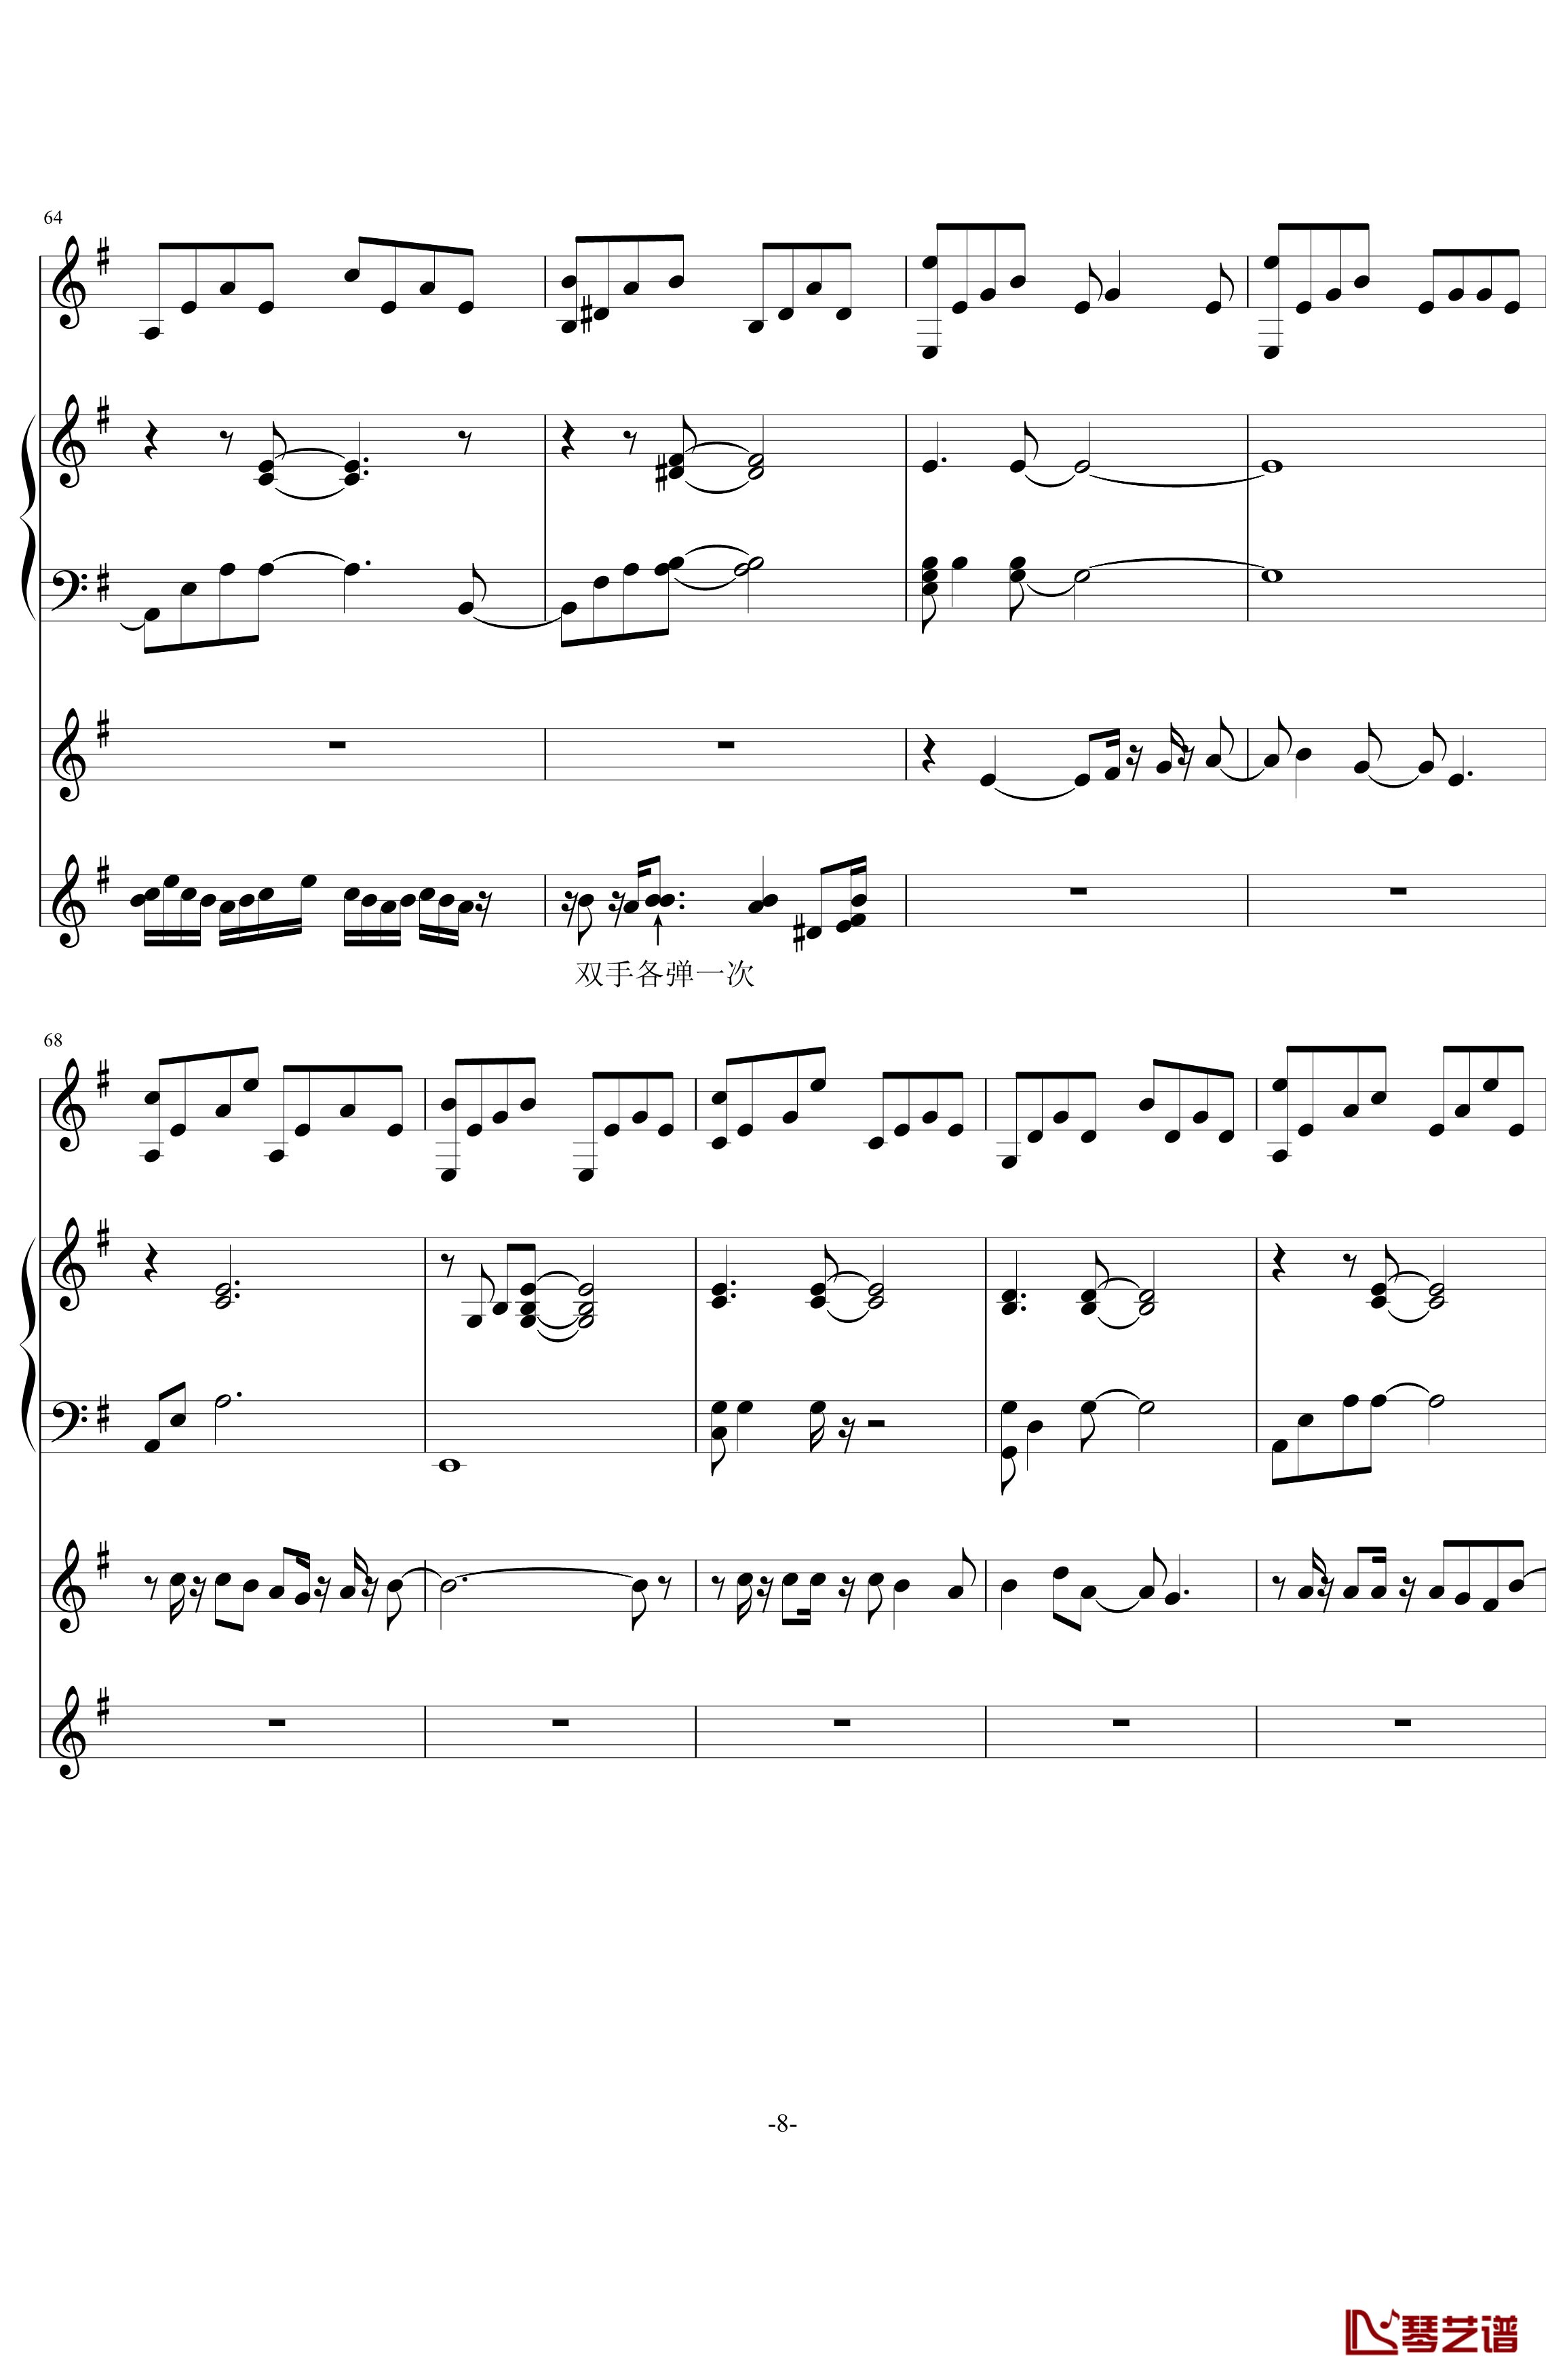 中提琴协奏版钢琴谱-含有钢琴独奏-老奠8